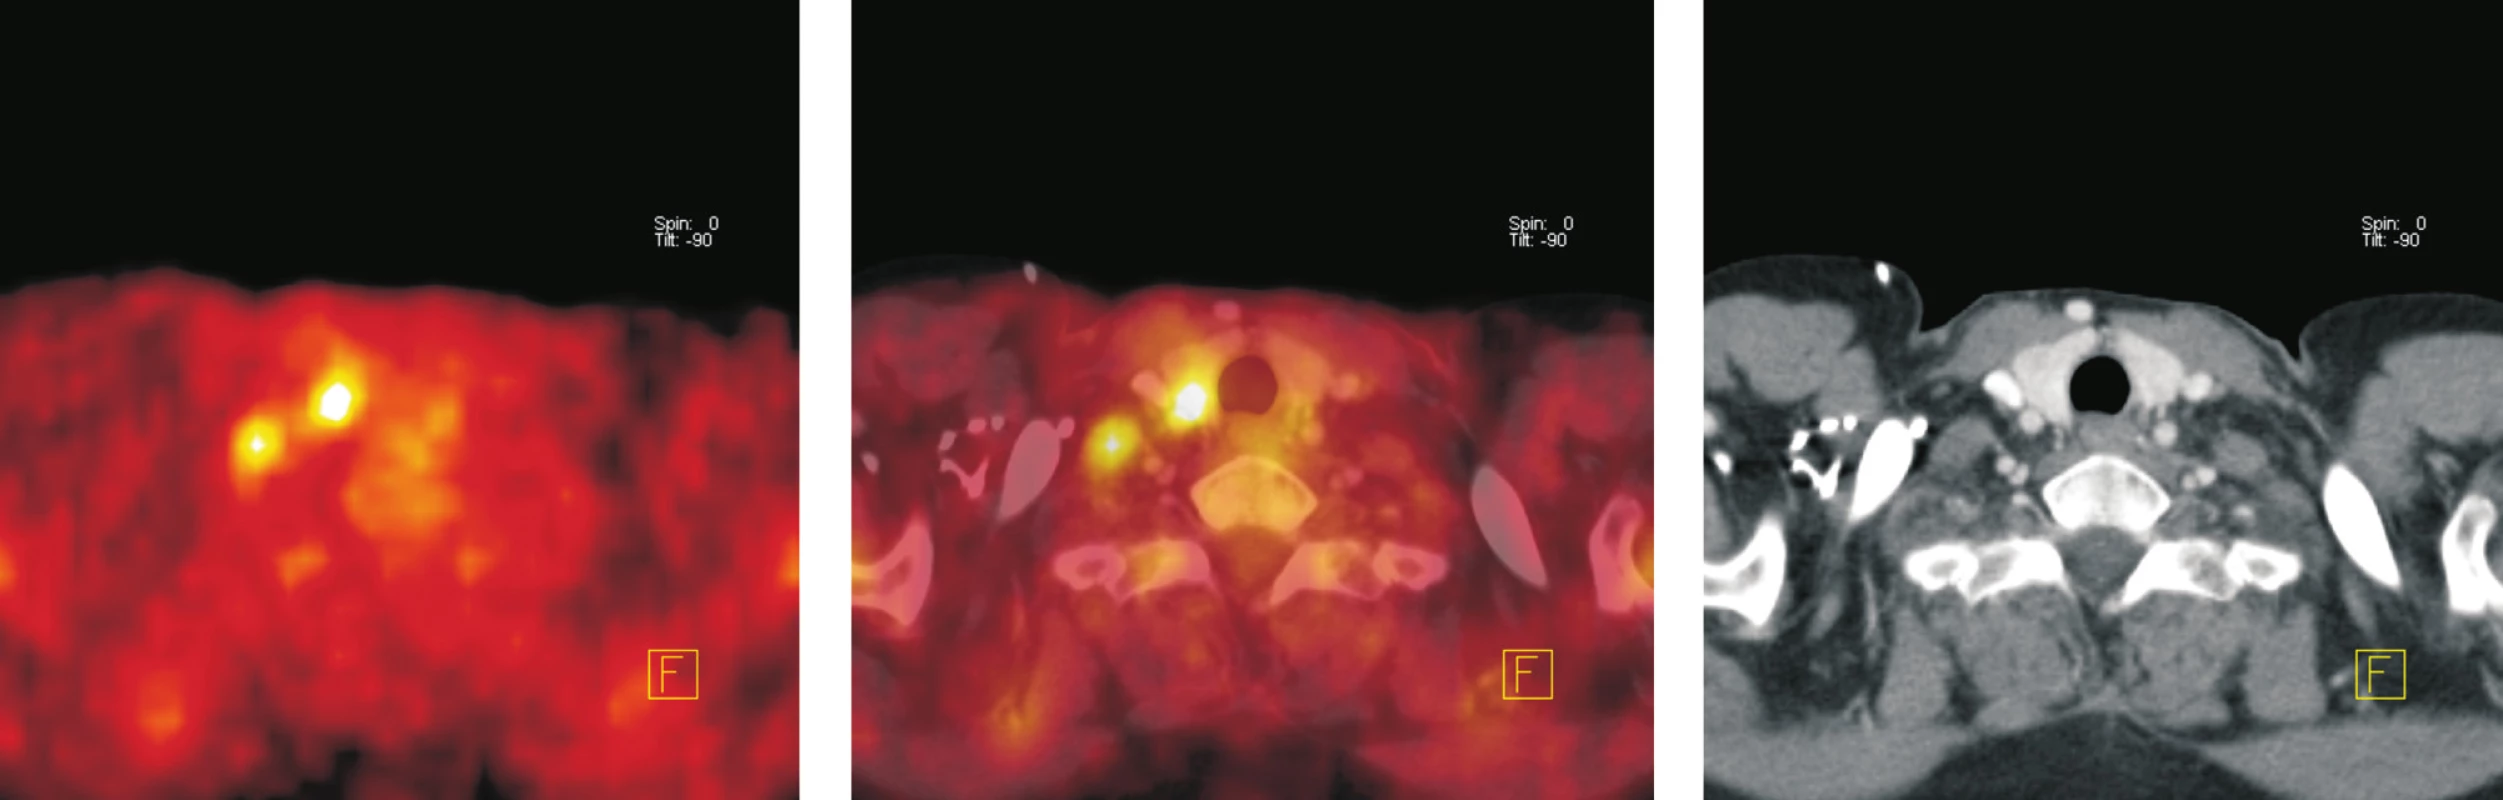 Transverzální tomografické řezy v úrovni štítné žlázy (a - PET, b - fúze PET/CT, c – CT). Ložisko zvýšené akumulace &lt;sup&gt;18&lt;/sup&gt;F-FDG v pravém laloku štítné žlázy velikosti 10 x 10 mm, na CT má nehomogenní strukturu. Opakovanou aspirační cytologií, laboratorním vyšetření, klinickým a ultrazvukovým sledováním prokázána koloidní struma bez poruchy funkce. Při kontrolním vyšetření o 12 měsíců později nebyla zvýšená akumulace &lt;sup&gt;18&lt;/sup&gt;F-FDG patrná.